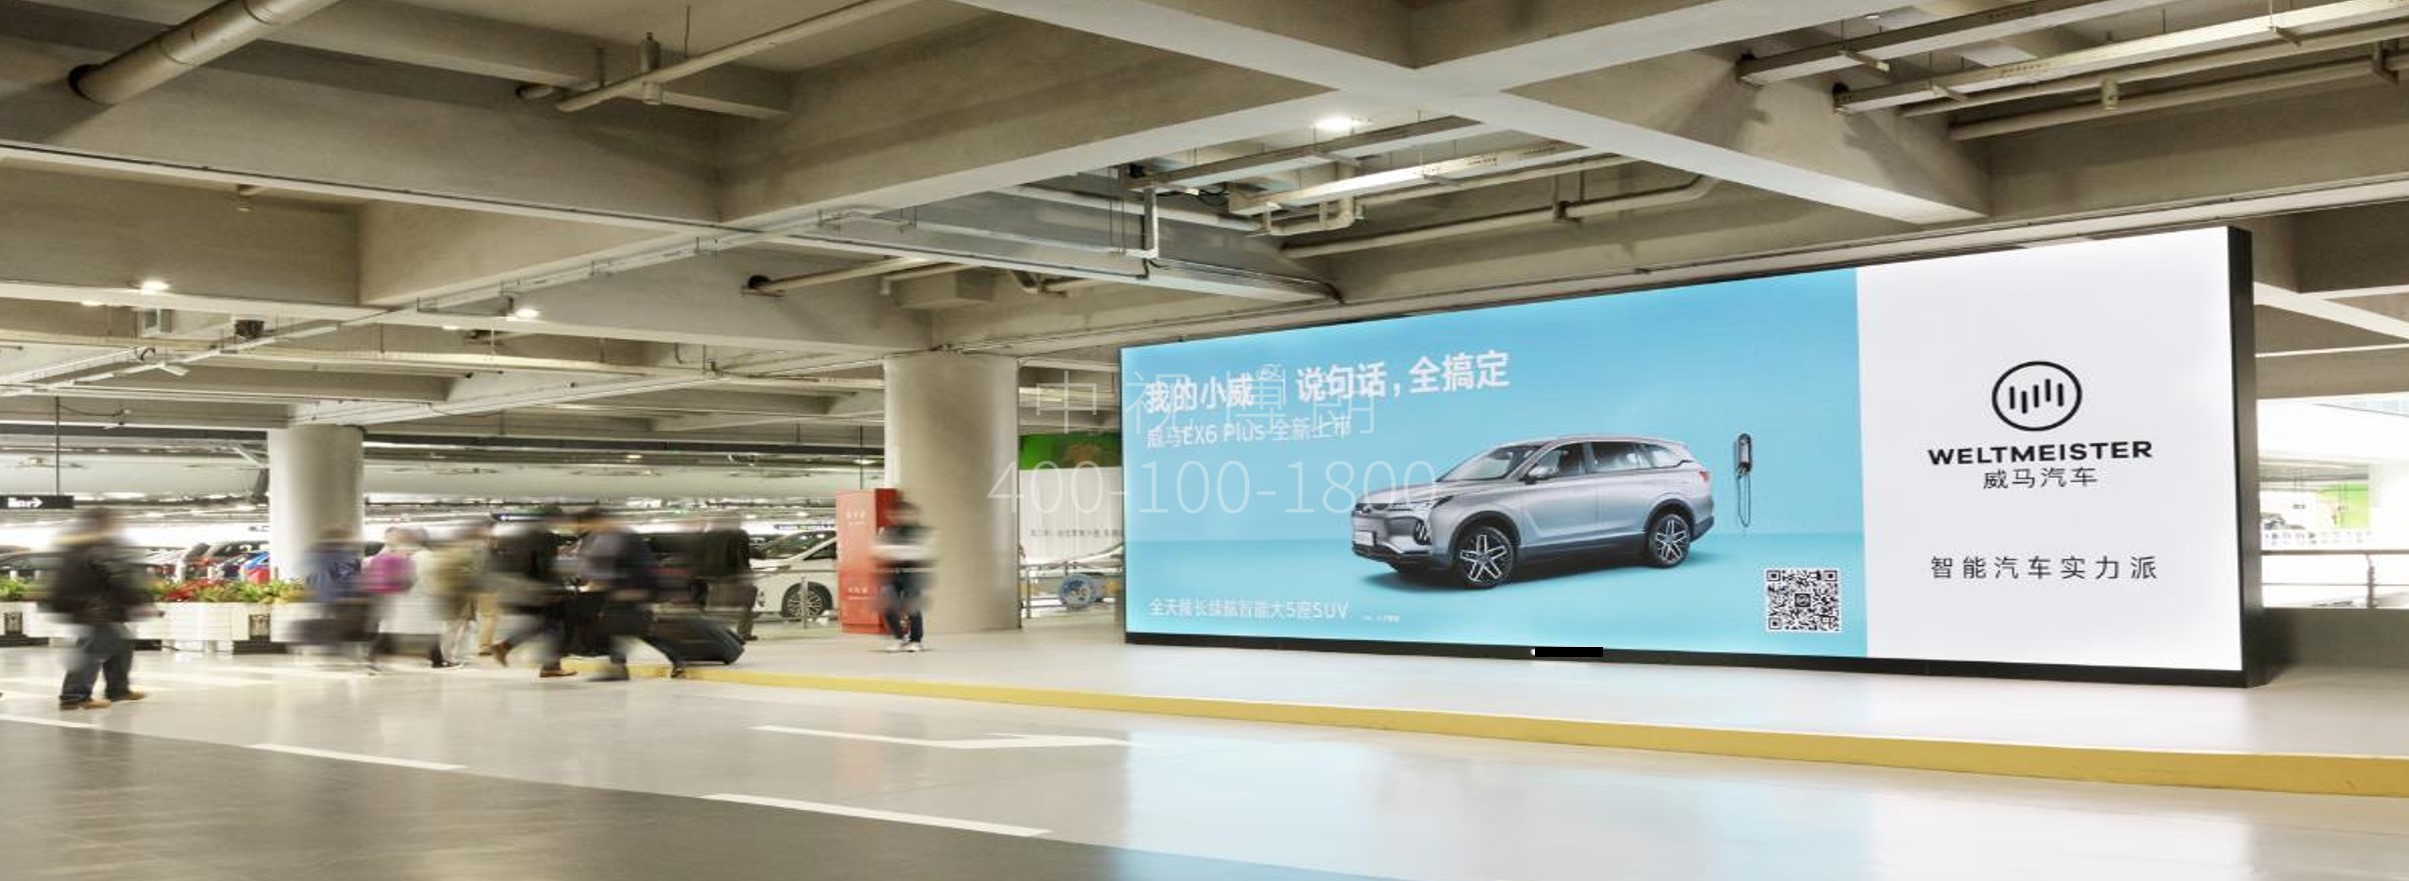 上海机场广告-虹桥T2停车场LED屏套装